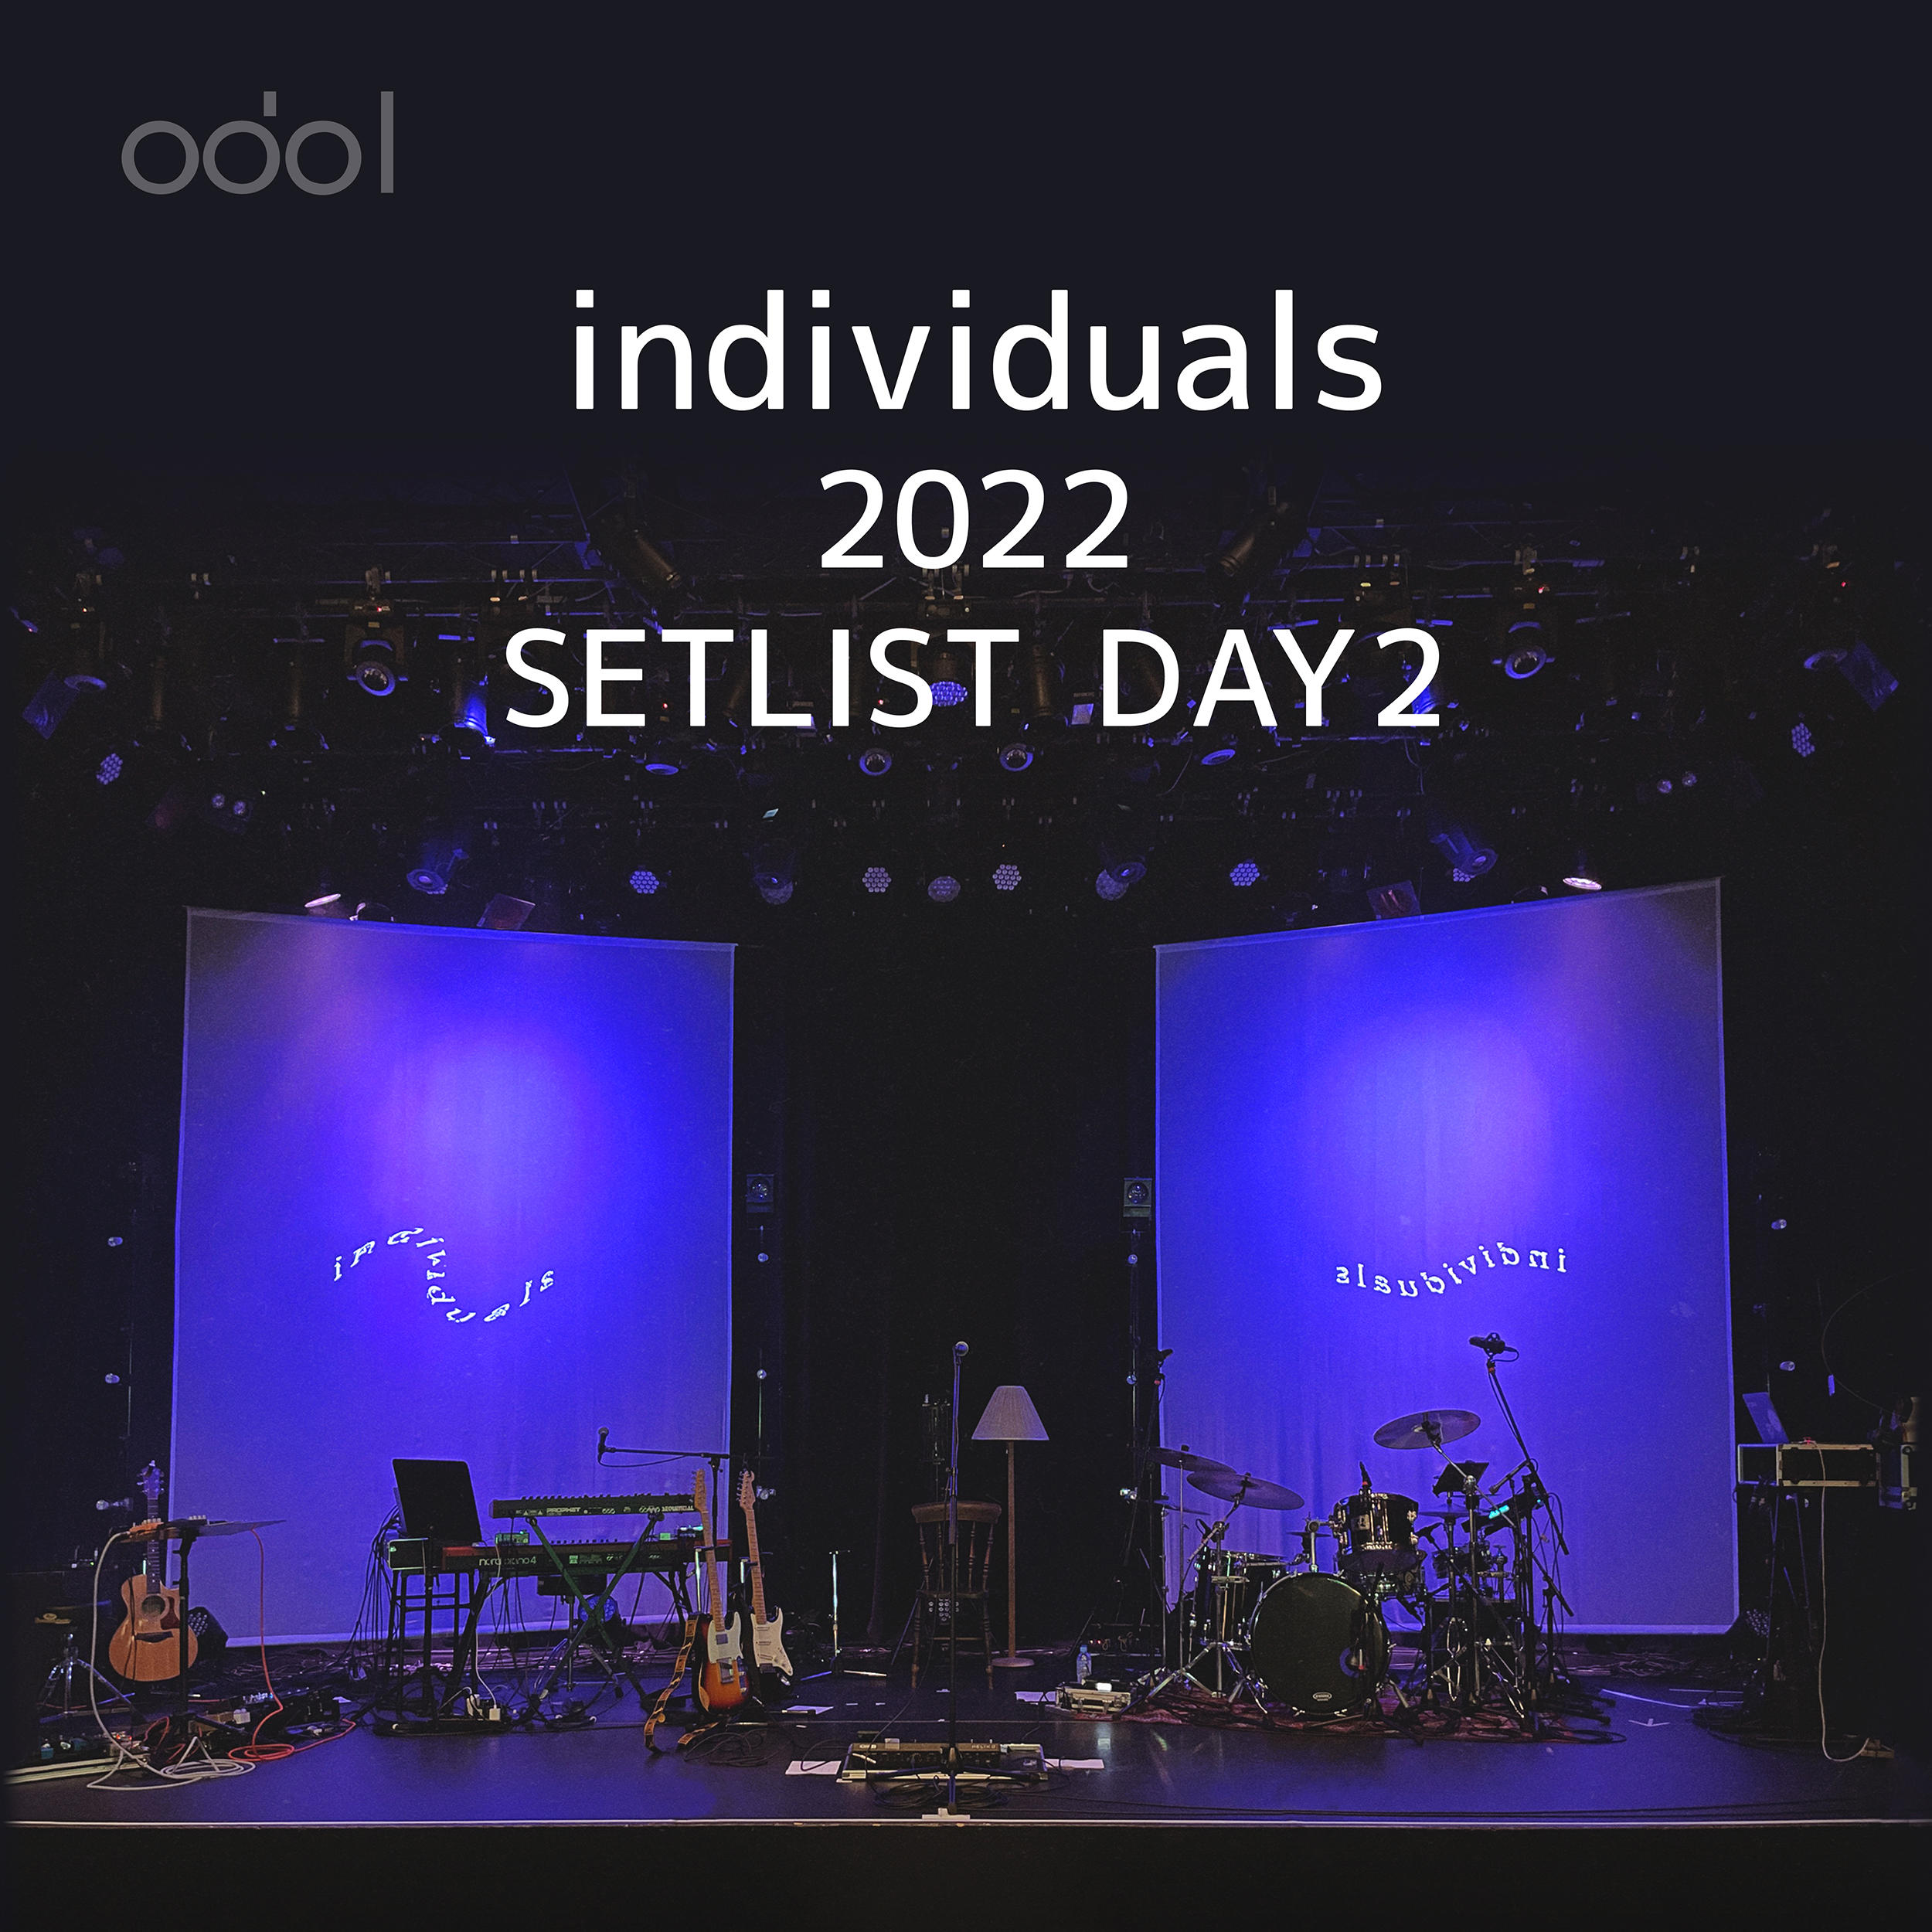 odol_individuals_2022_playlist_02.jpg